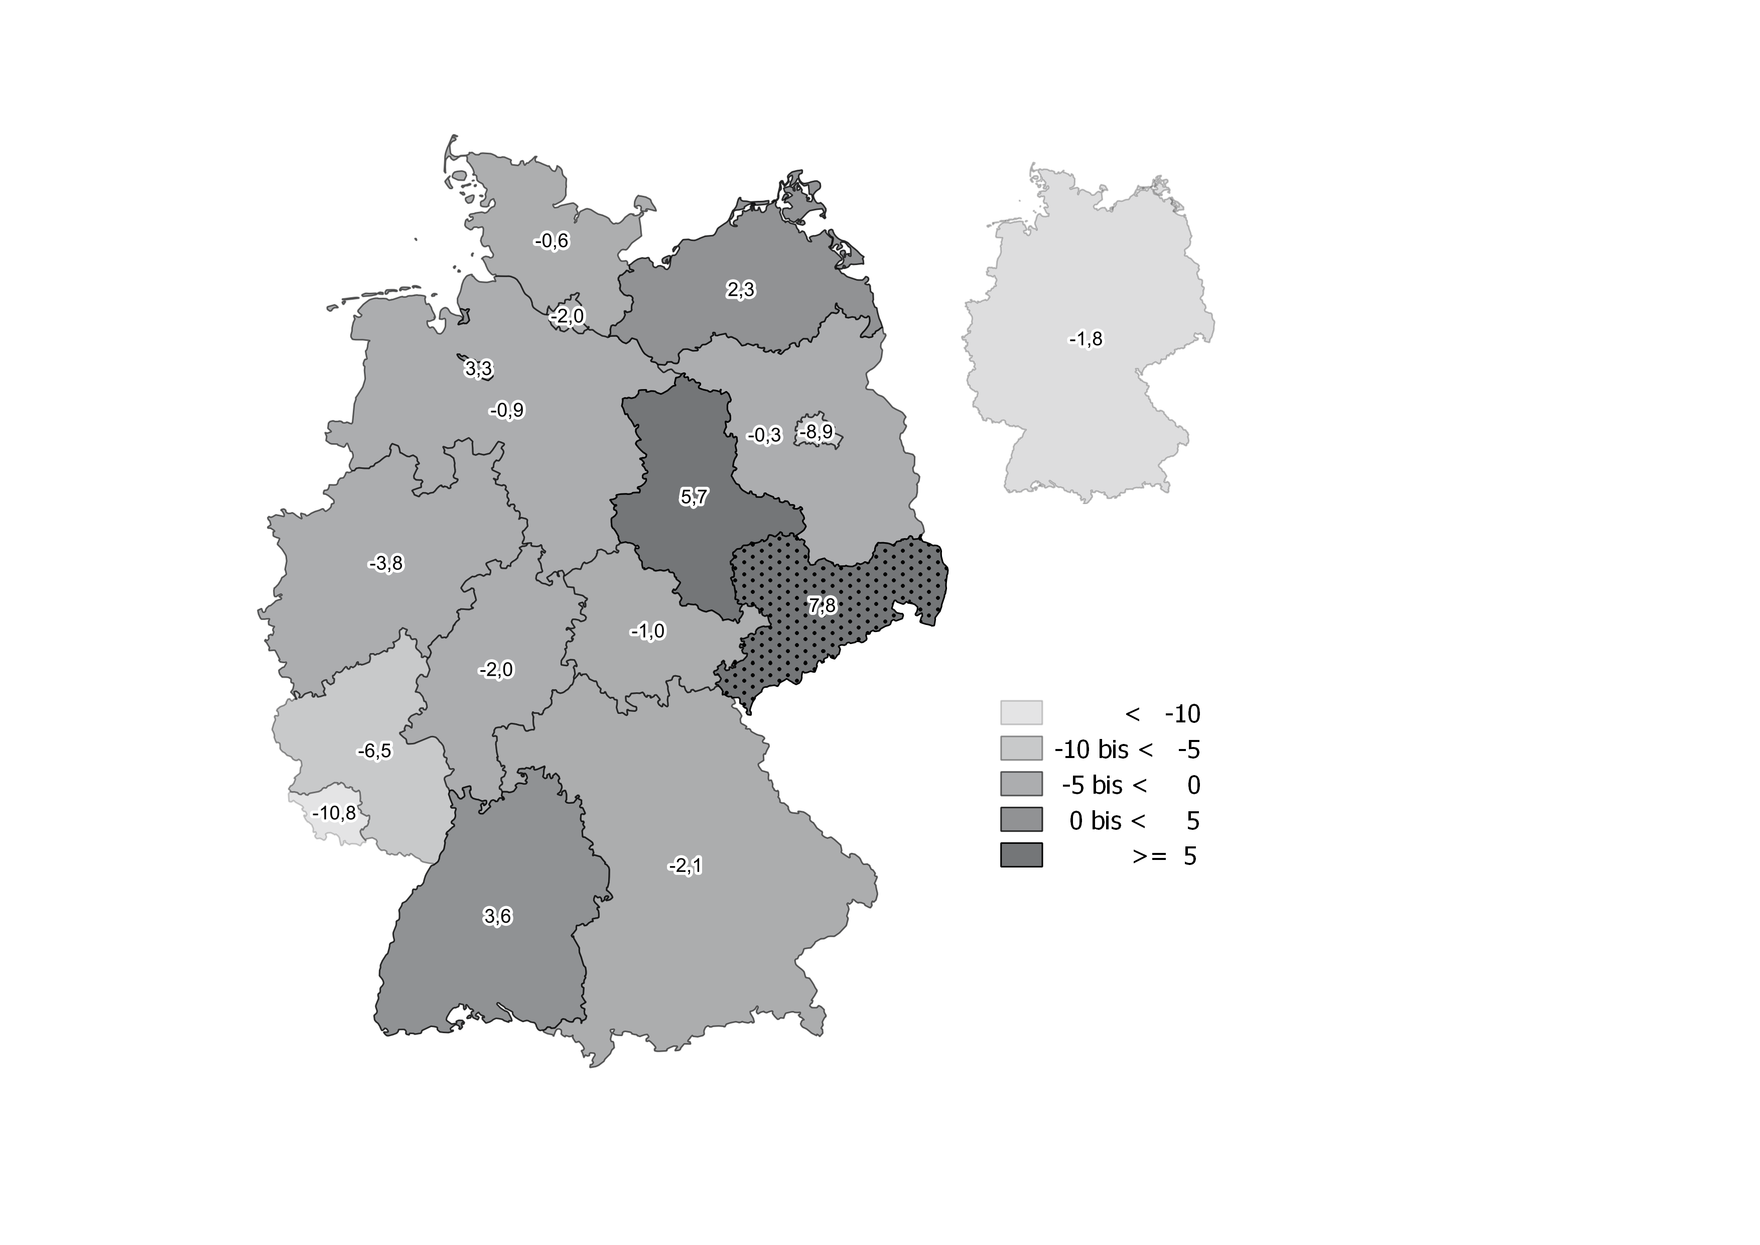 Neben Sachsen gab es auch in Sachsen-Anhalt, Mecklenburg-Vorpommern, Bremen und Baden-Württemberg einen positiven Anstieg der Teilzeitbeschäftigten. In allen anderen Bundesländern sank der Anteil der Teilzeitbeschäftigten in ambulanten Pflegediensten.